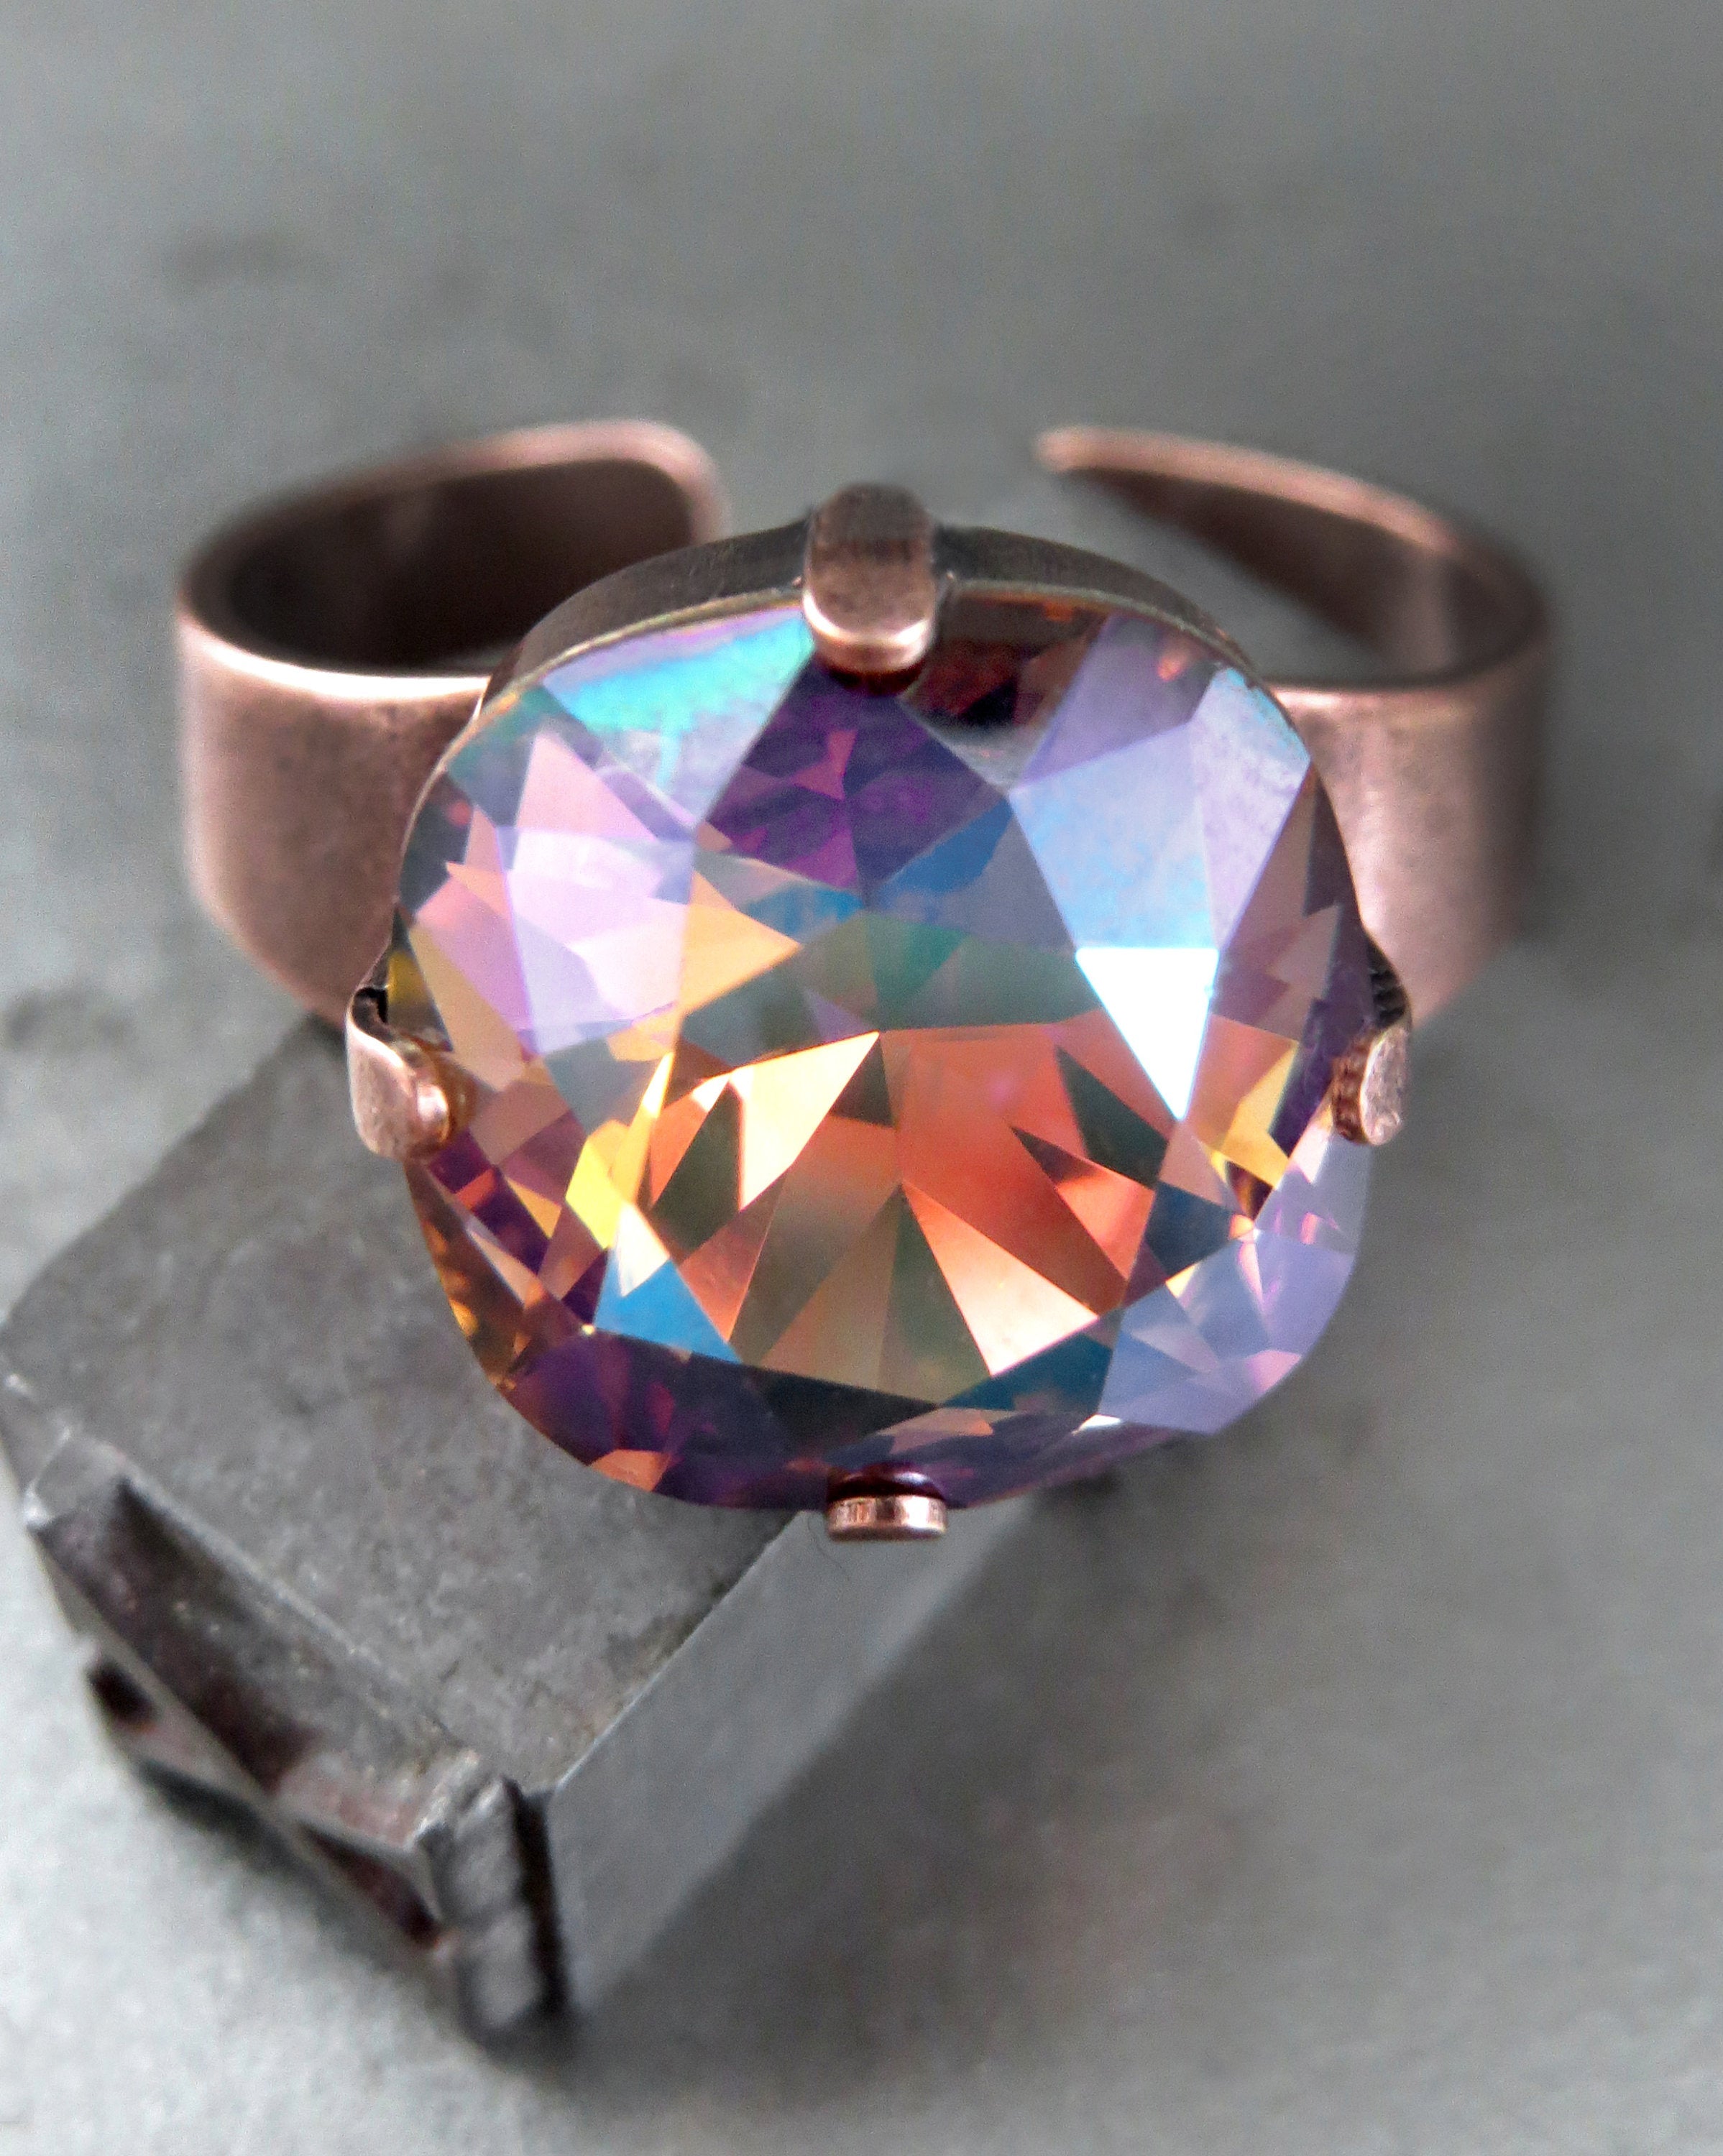 WARM REGARDS - Multicolor Mystical Crystal Ring